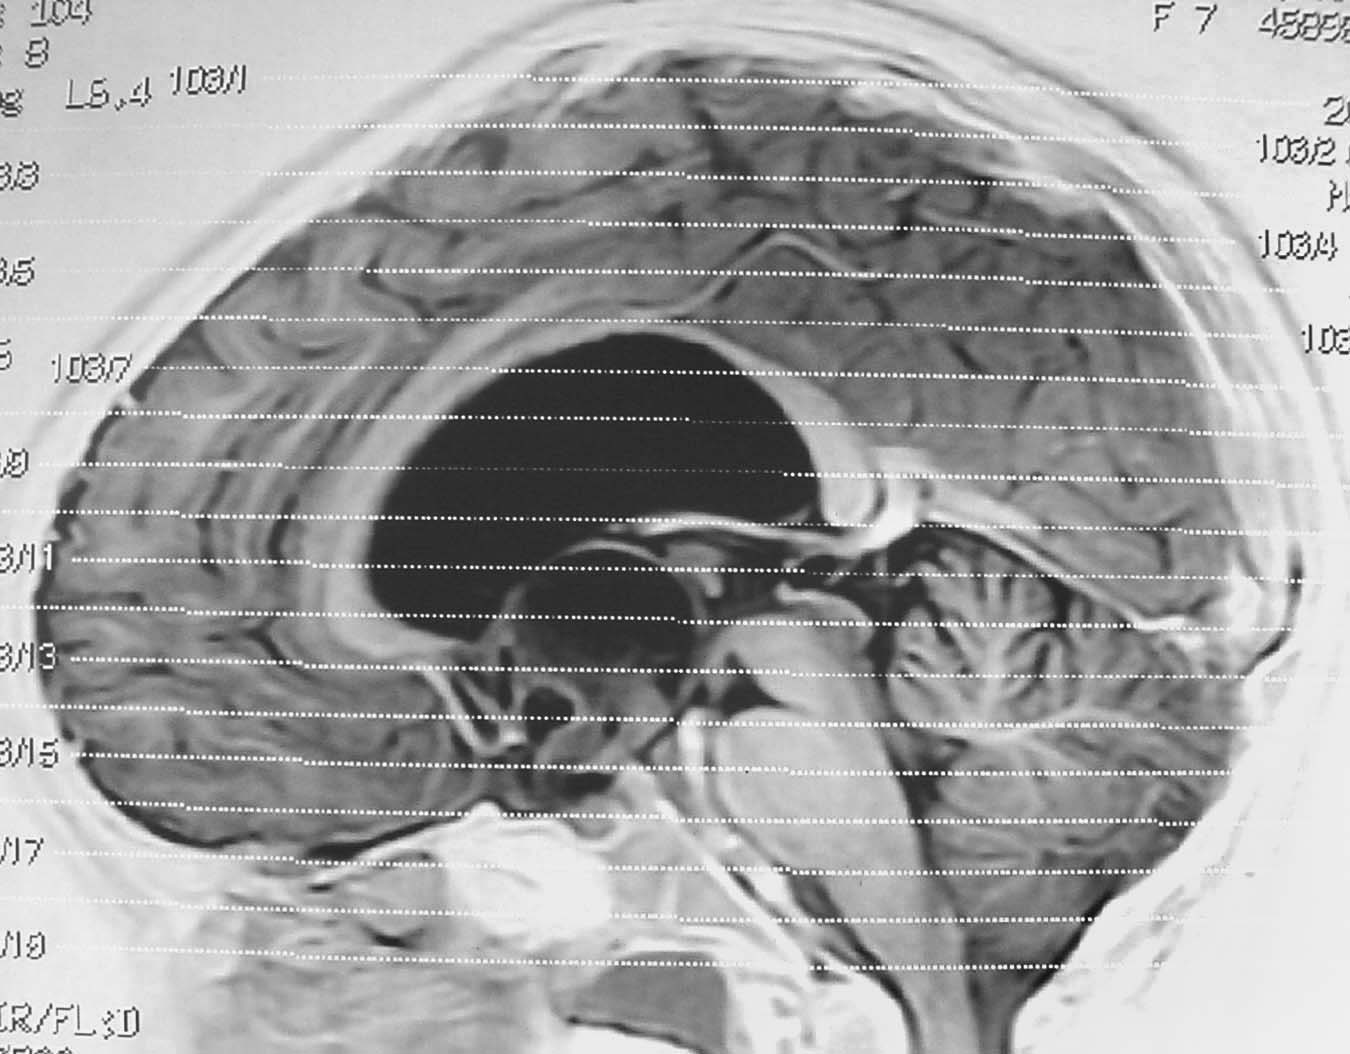 Imagen de Nia de 7 aos con masa supraselar e hipotalmica / Seven year old child with suprasellar and hypothalamic mass.